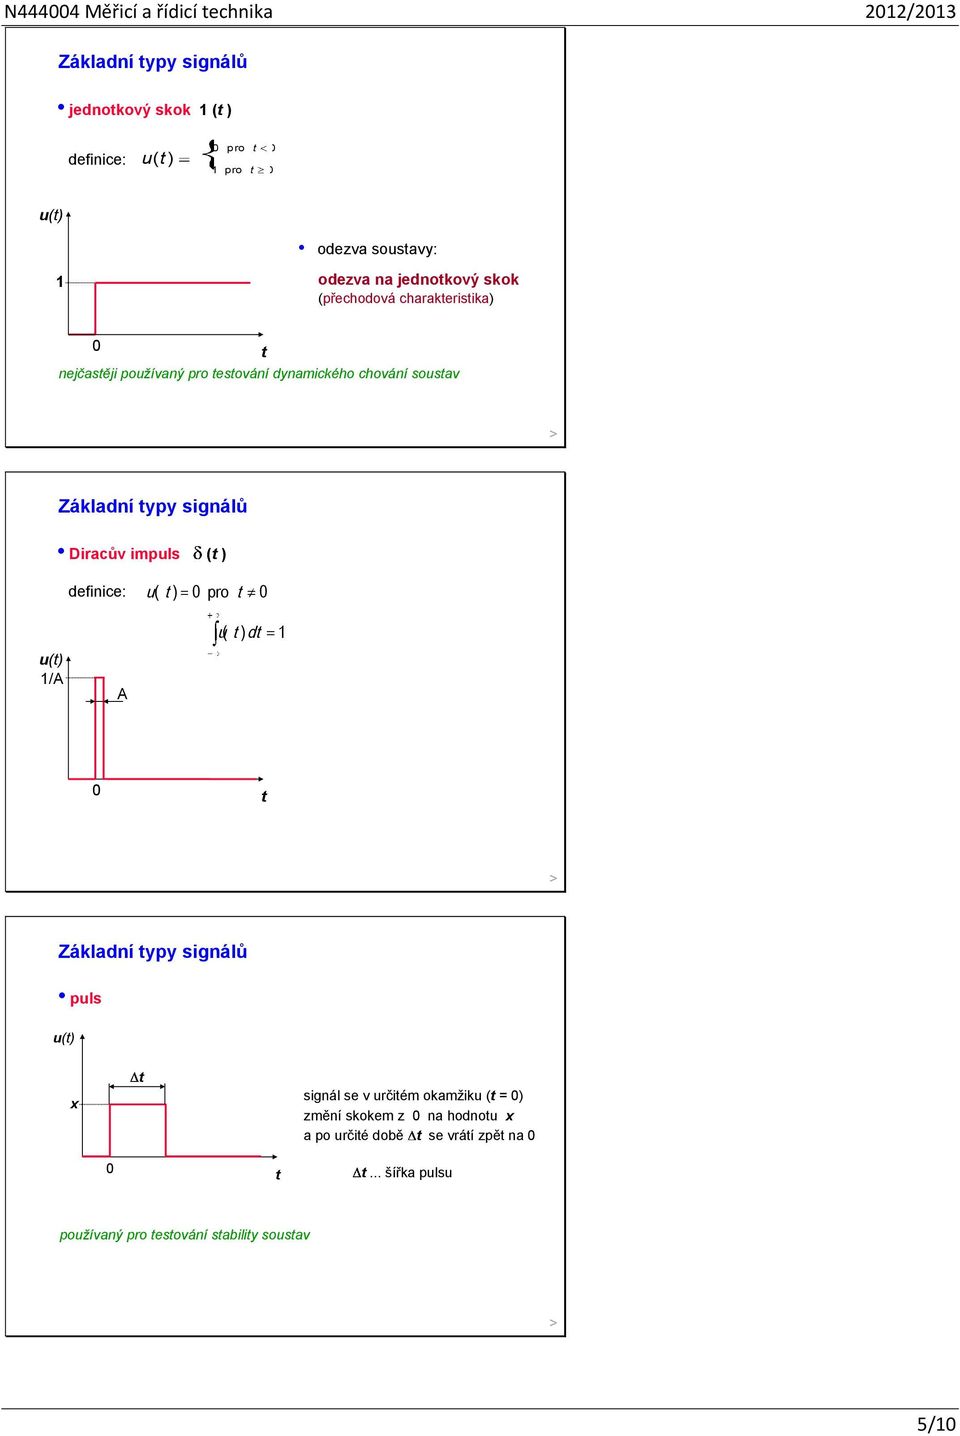 signálů Diracův impuls ( ) definice: u( ) pro ( u ) d 1 u() 1/A A Záladní ypy signálů puls u() x signál se v určiém